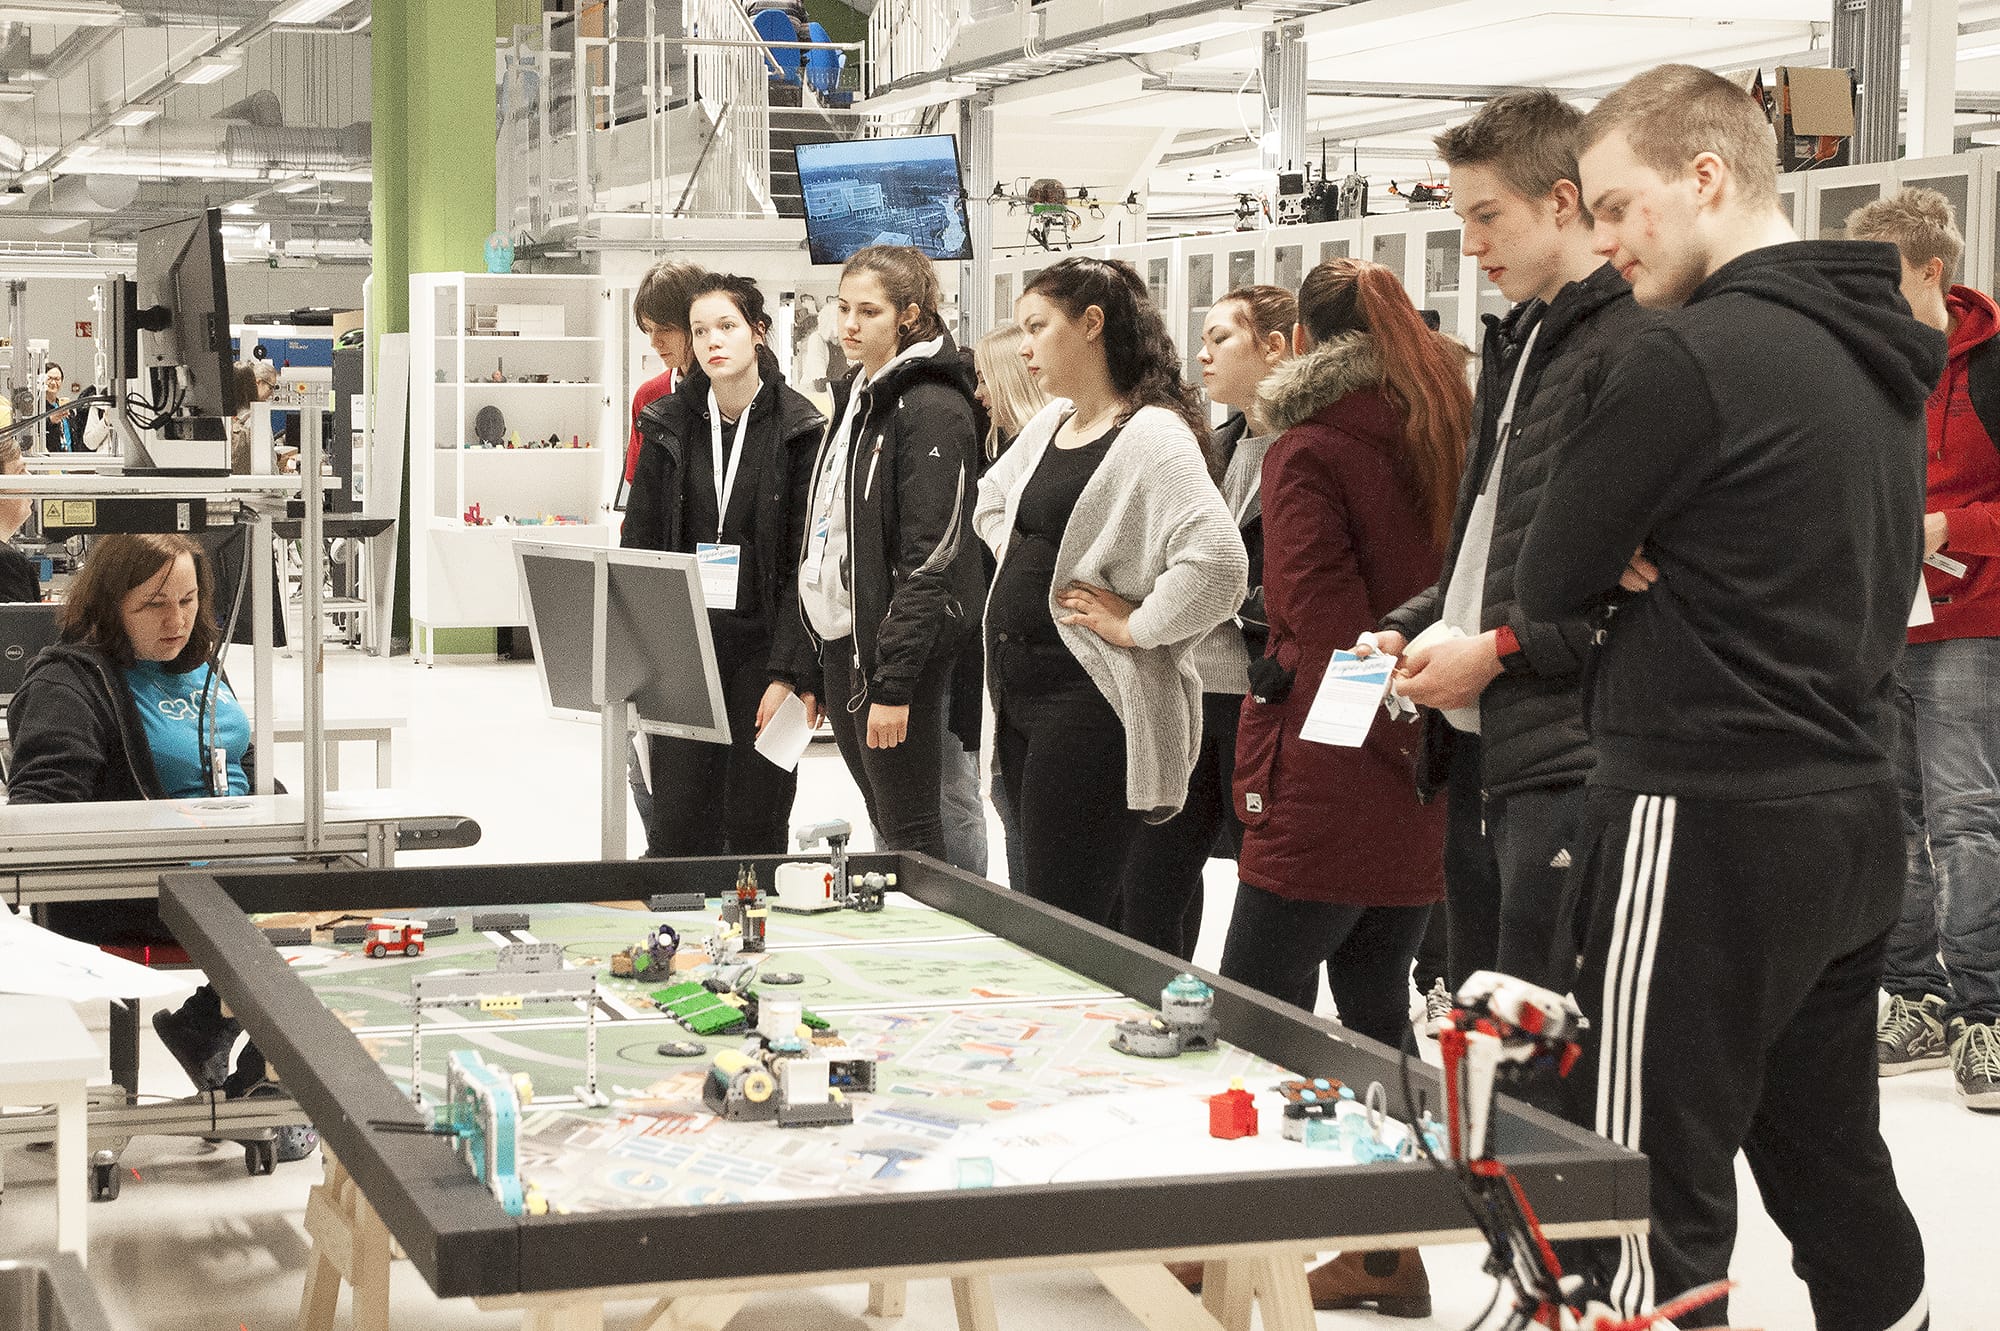 Opiskelijaryhmä tutustumassa legorobotteihin OpenSAMK-tapahtumassa Porissa.